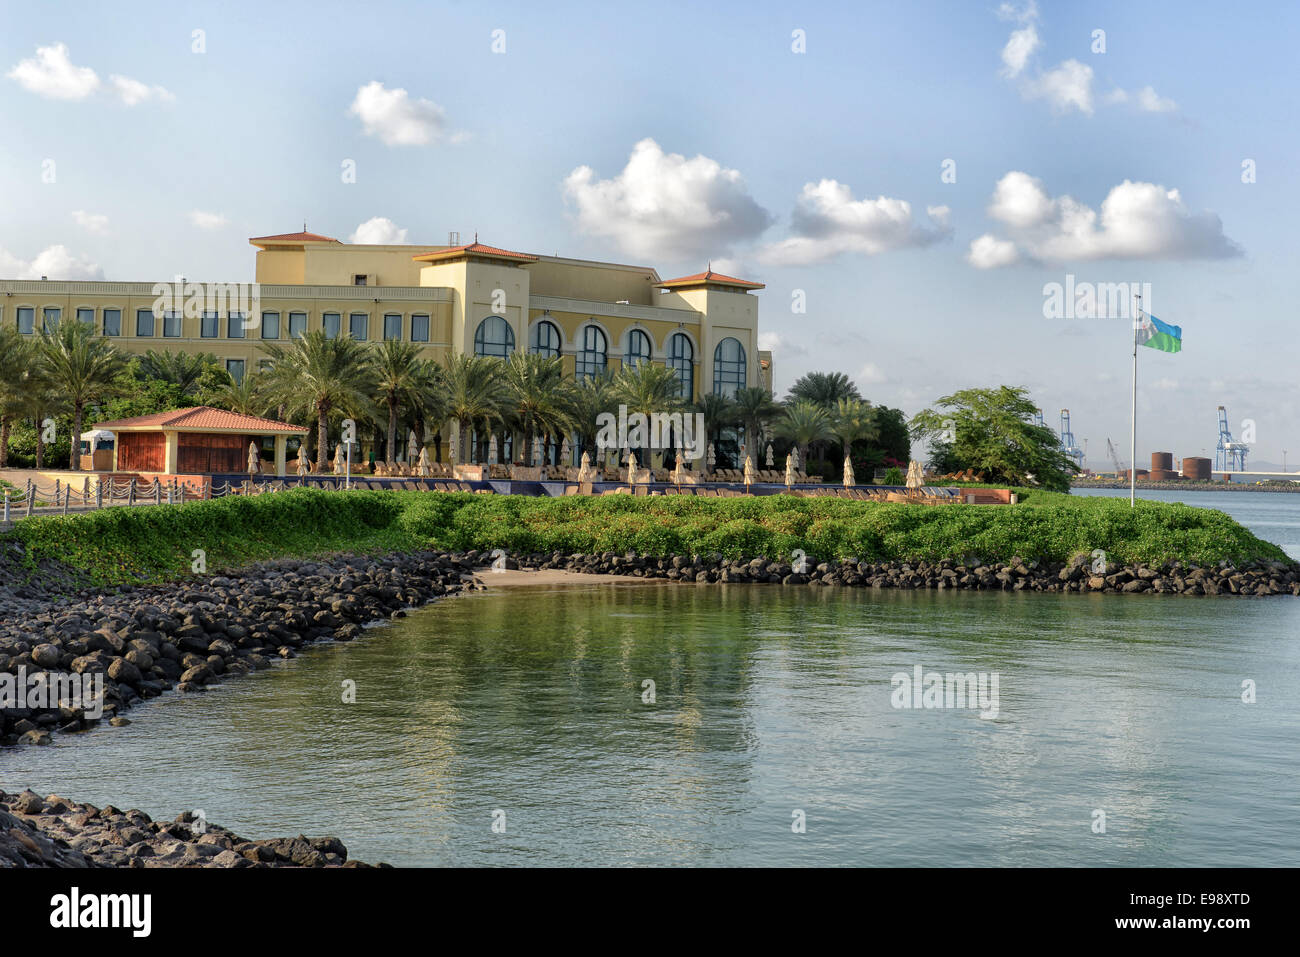 Kempinski Palace in Djibouti City, Djibouti Stock Photo